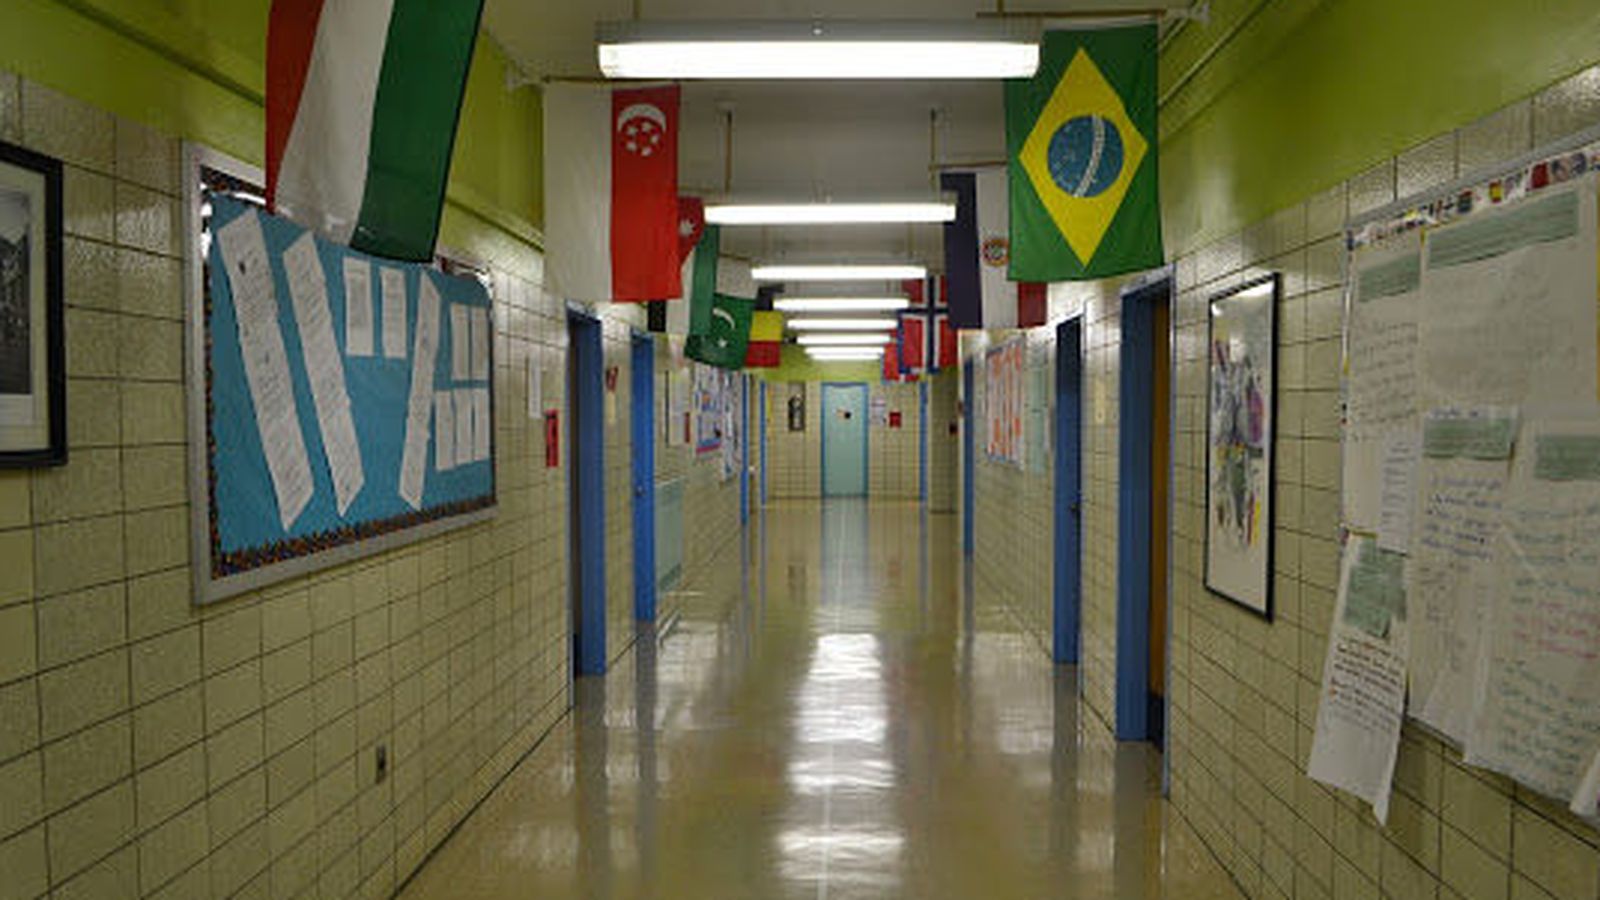 Foto: Los pasillos de la Henry School International Studies, donde impartió clase Boland.